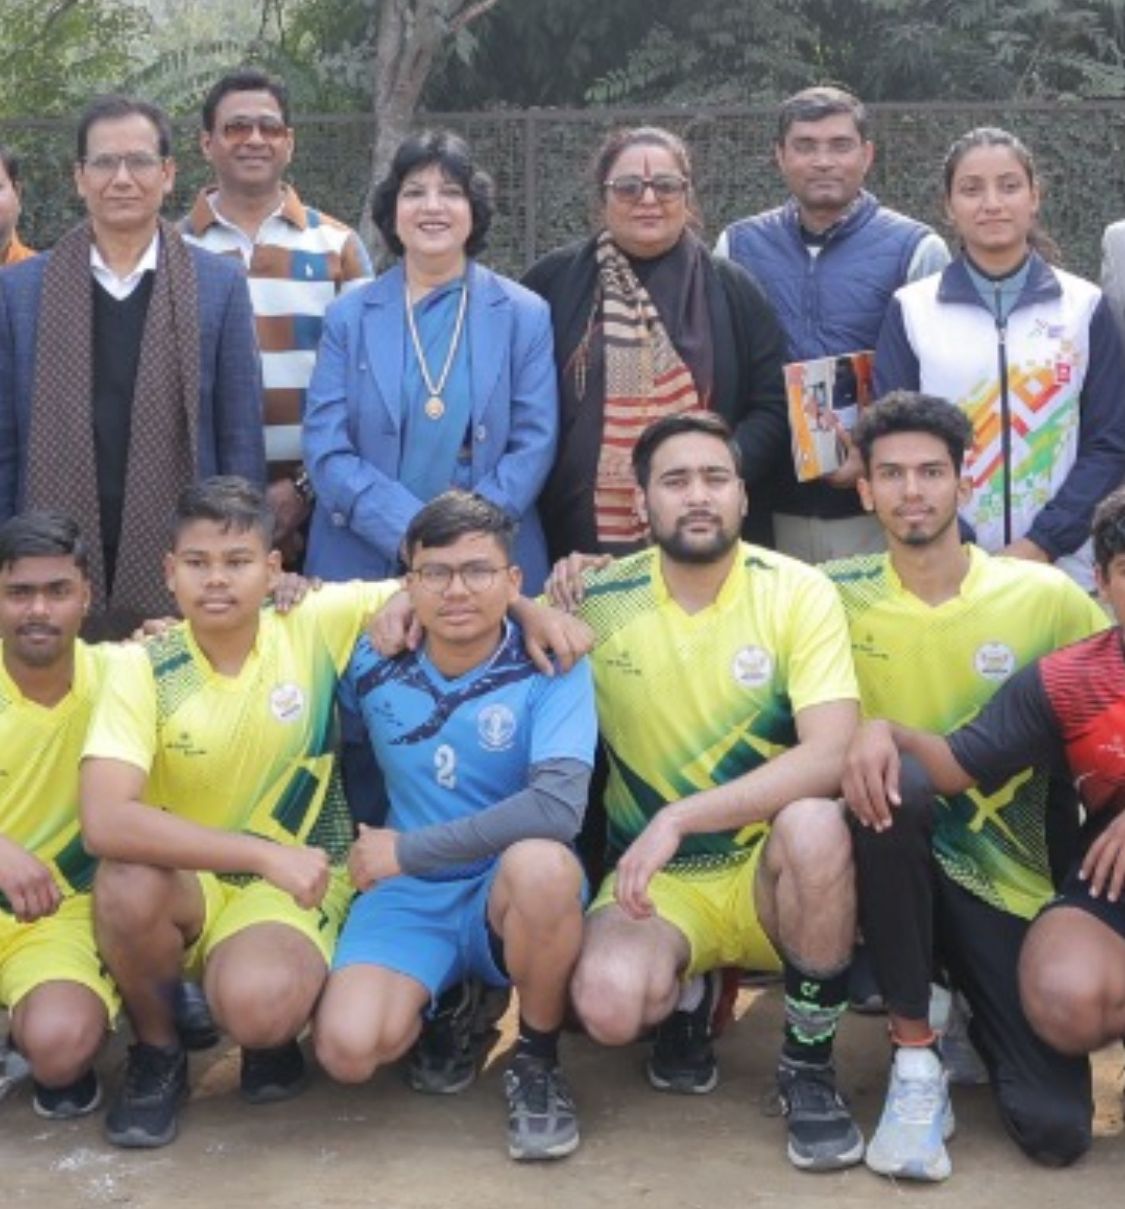 Satyavati Mahavidyalaya (Morning) beat PGDAV (Evening) in Dr. K.P. Bhatt Memorial Volleyball Championship 